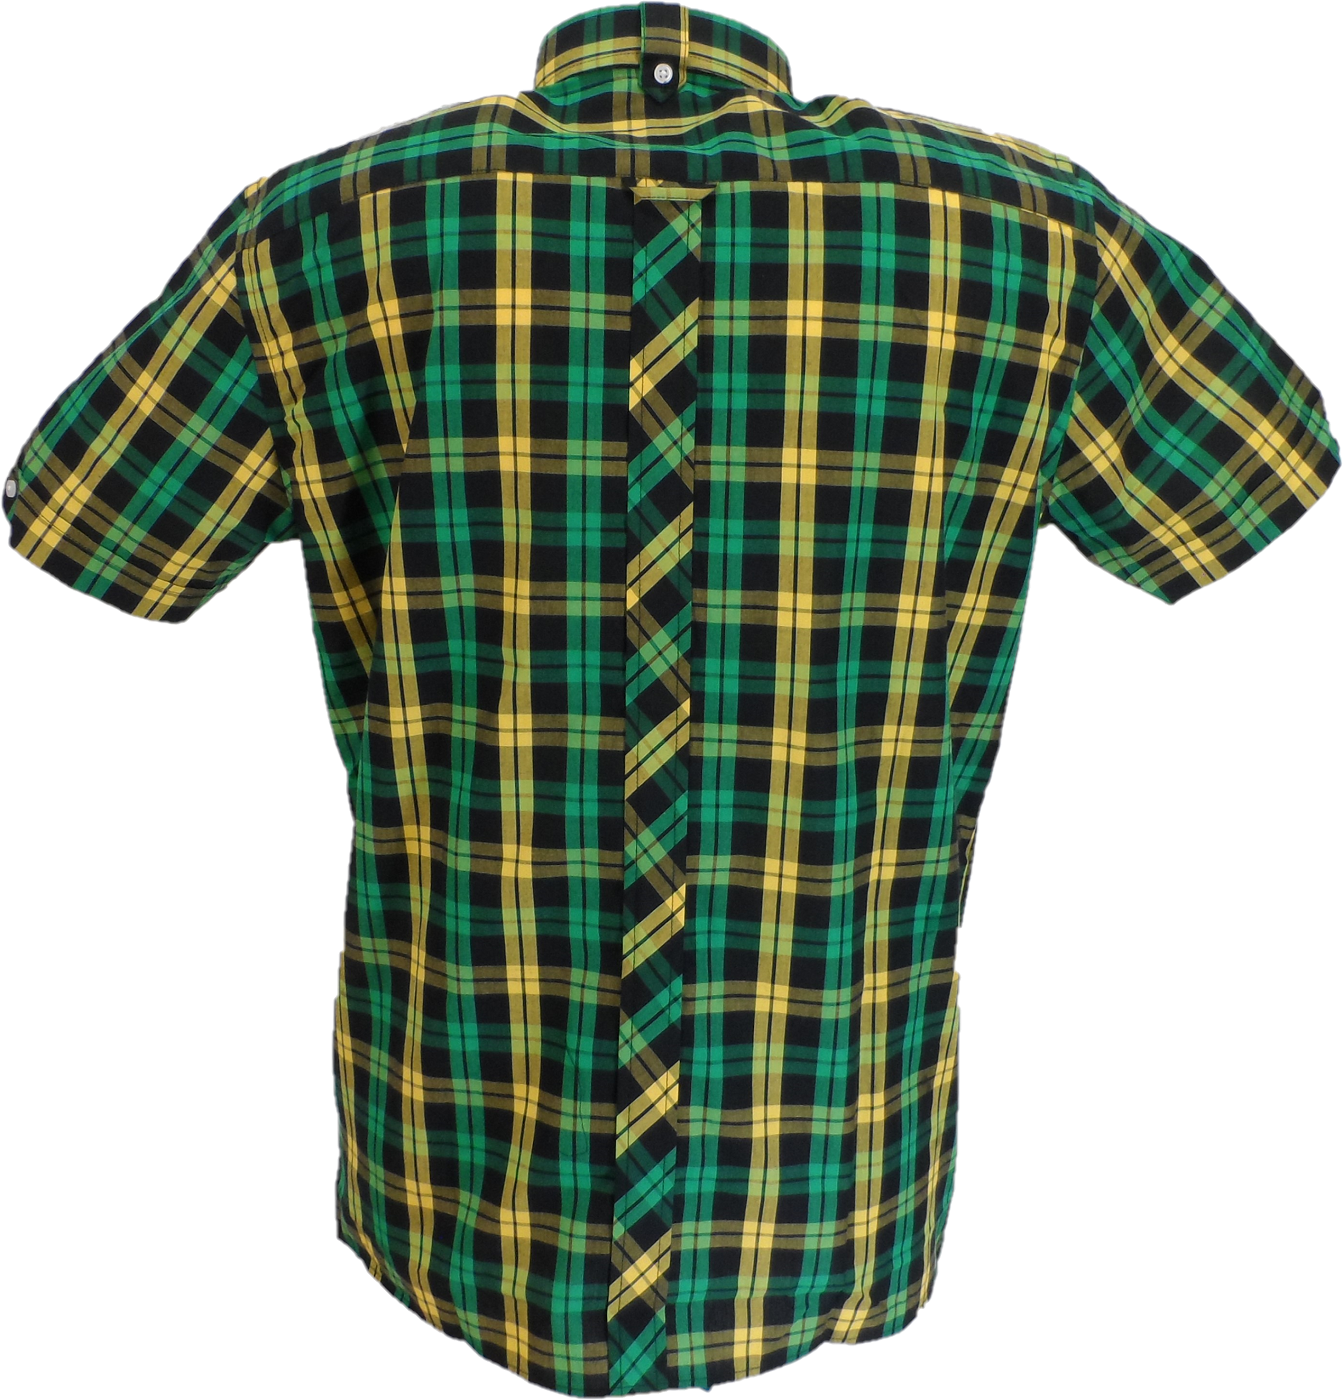 Trojan Camisas de manga corta y pañuelo de bolsillo para hombre, color negro, verde y dorado